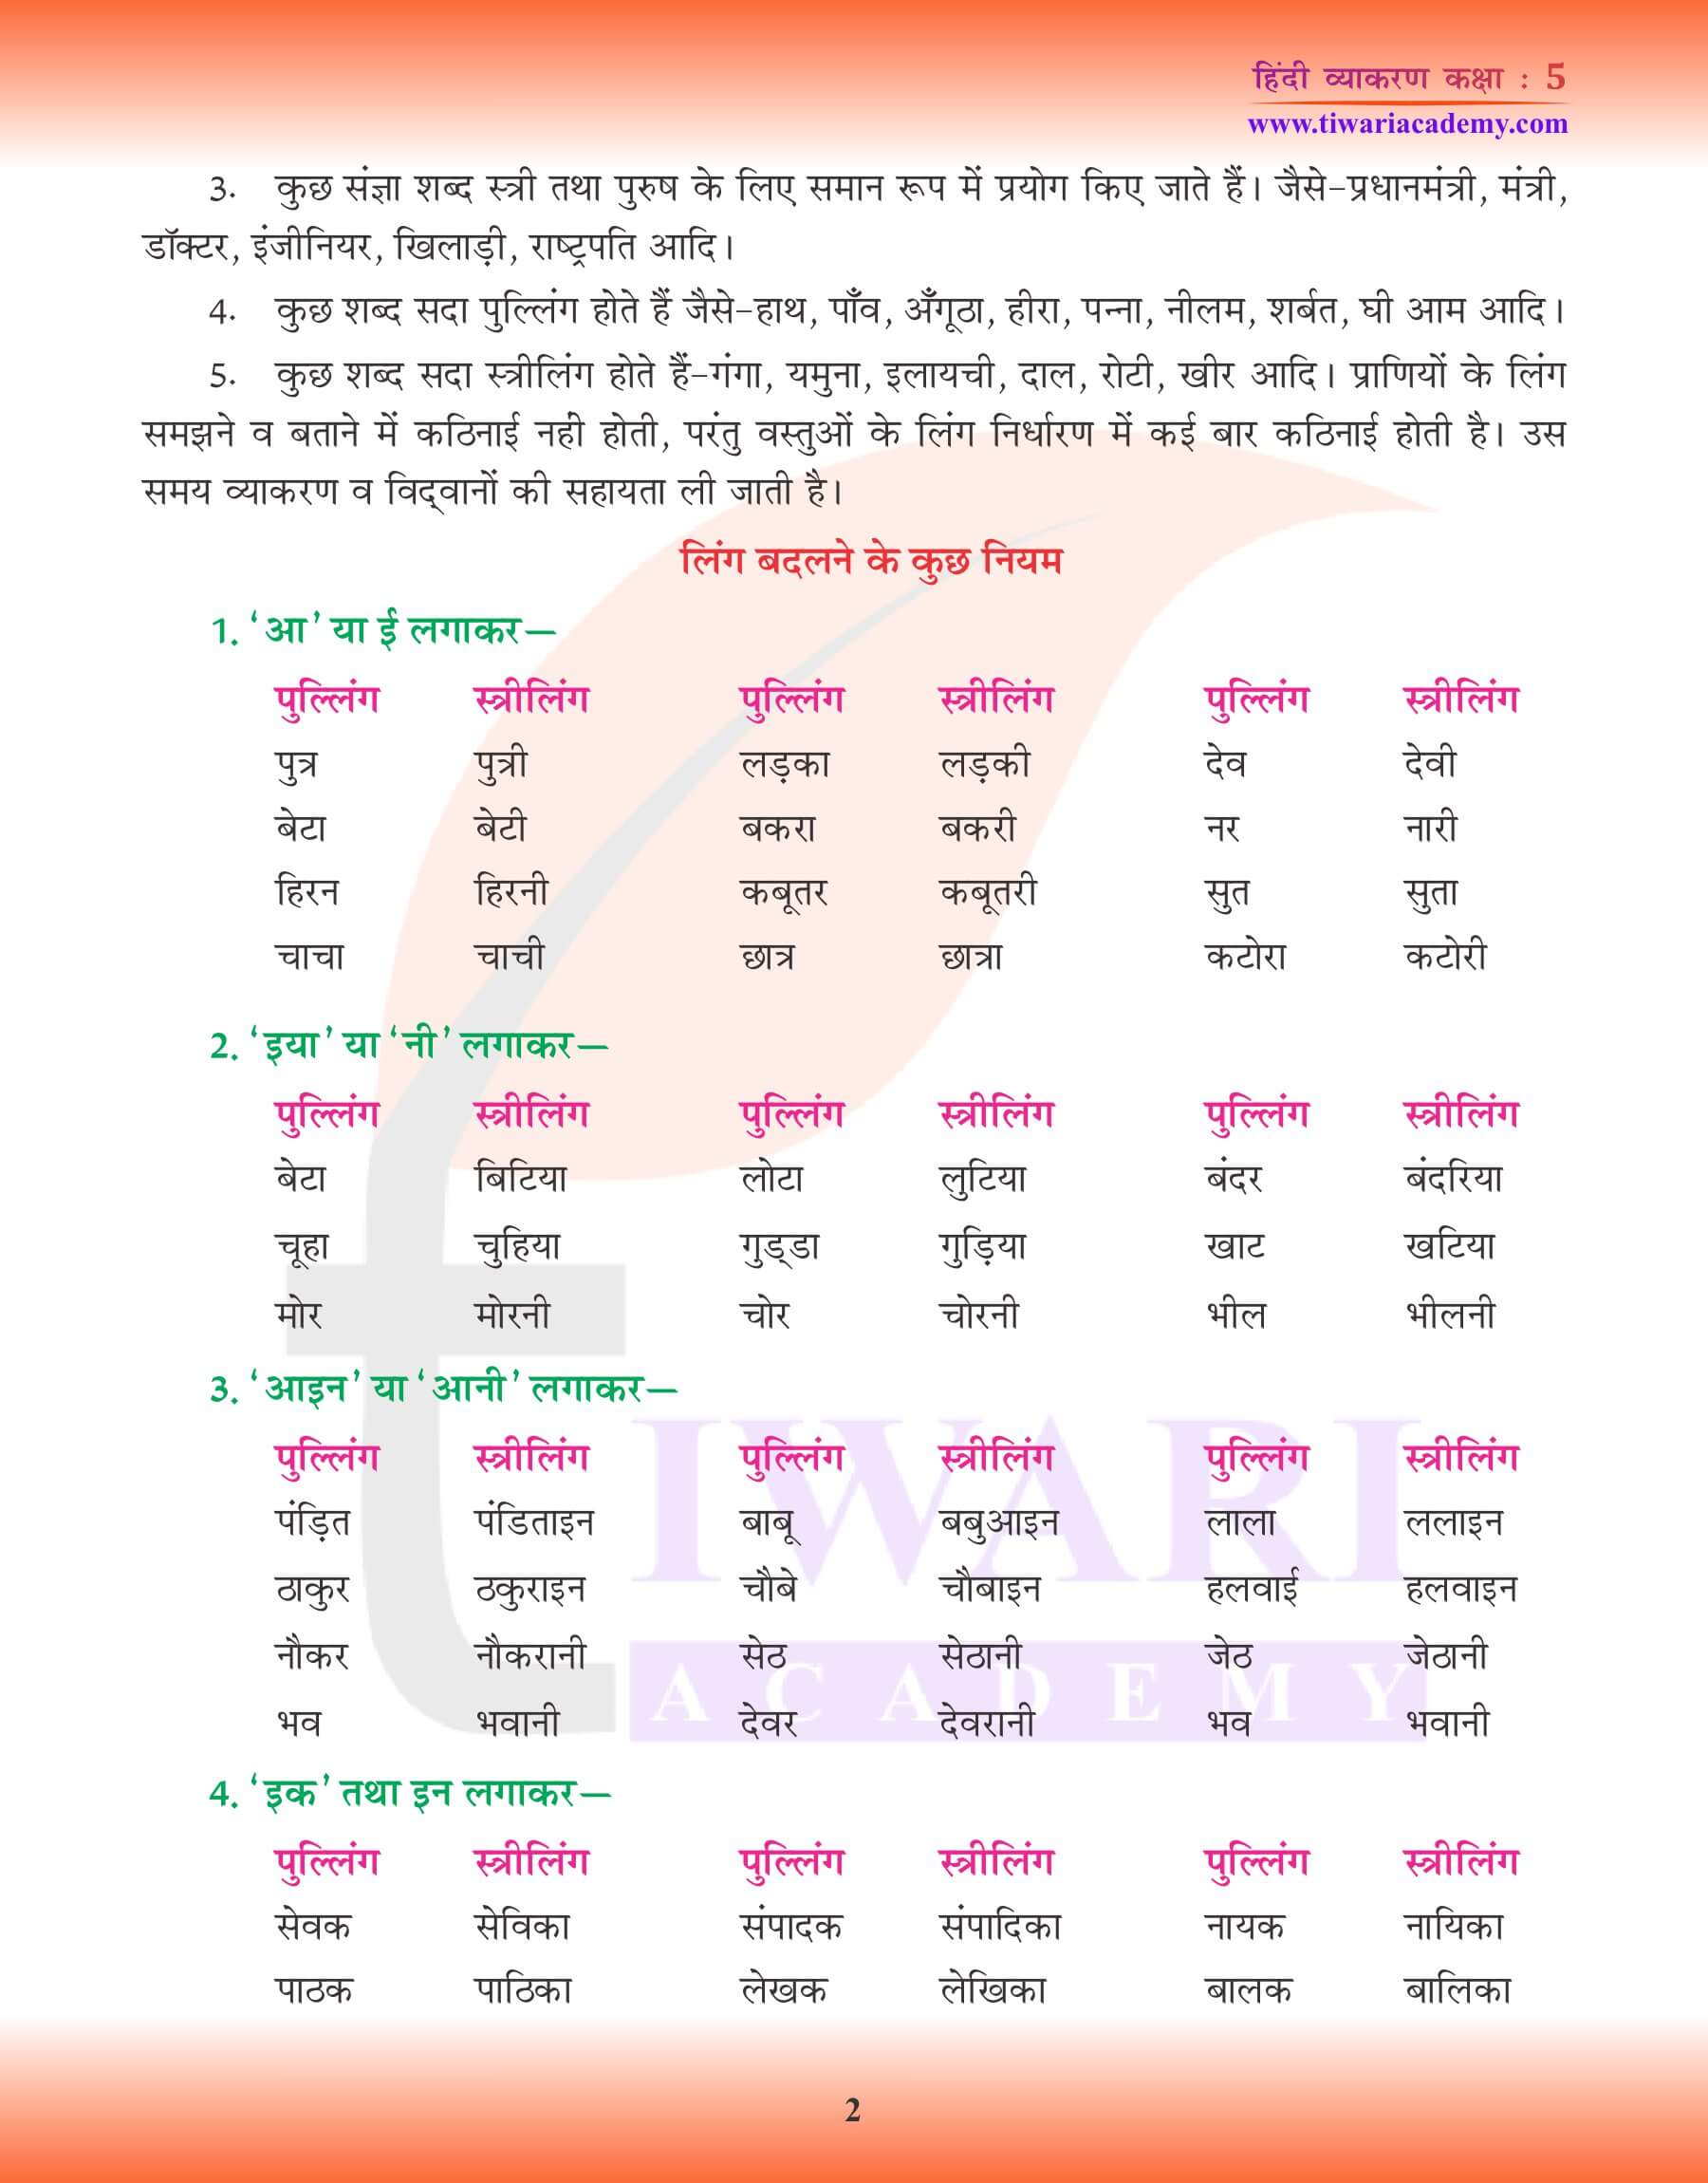 कक्षा 5 हिंदी व्याकरण लिंग के उदाहरण